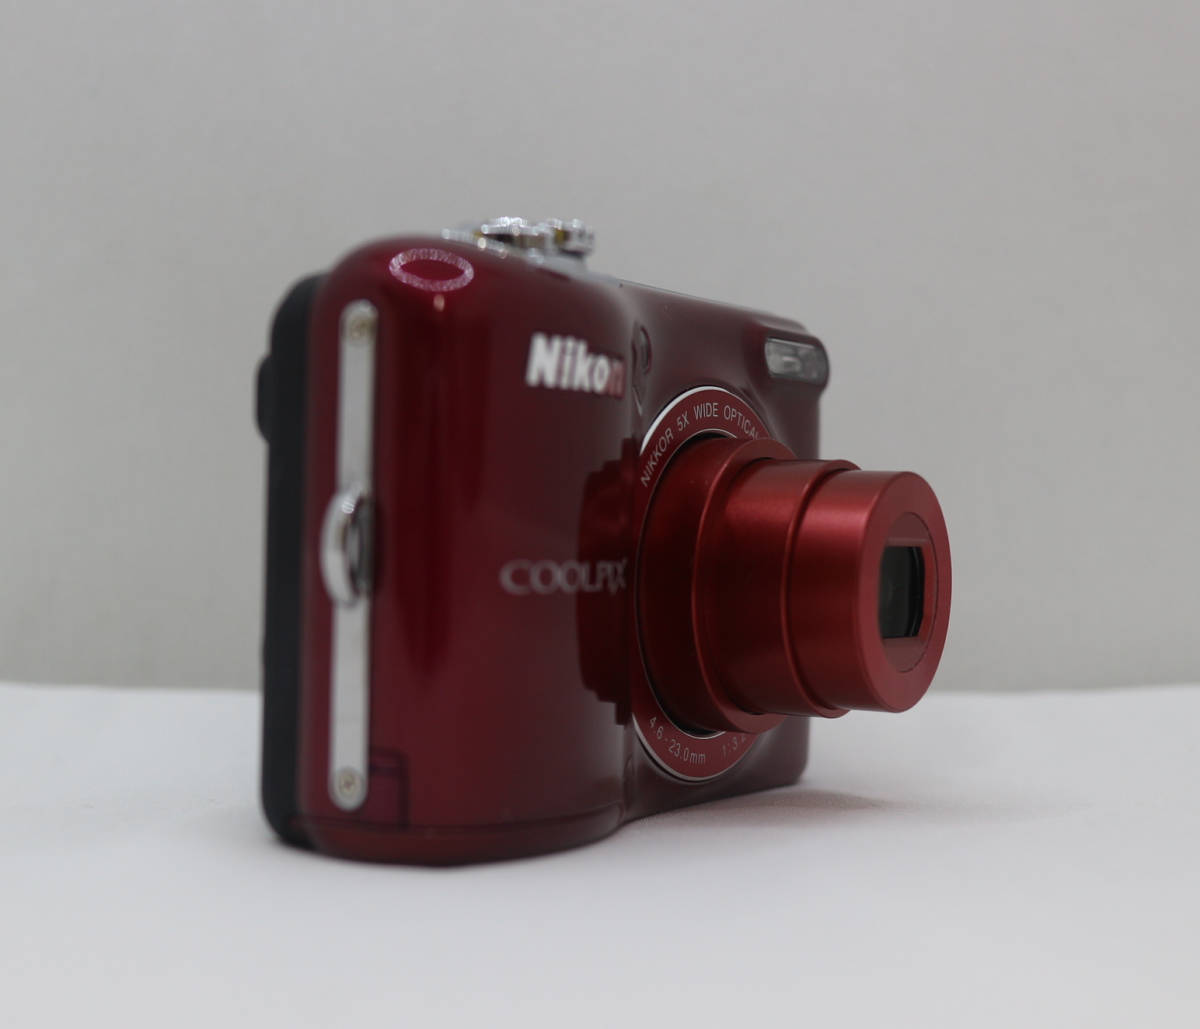 未使用品 COOLPIX L30 Nikon / デジカメ レッド / 箱有 / USBケーブル、取説付 / 中古品_画像3